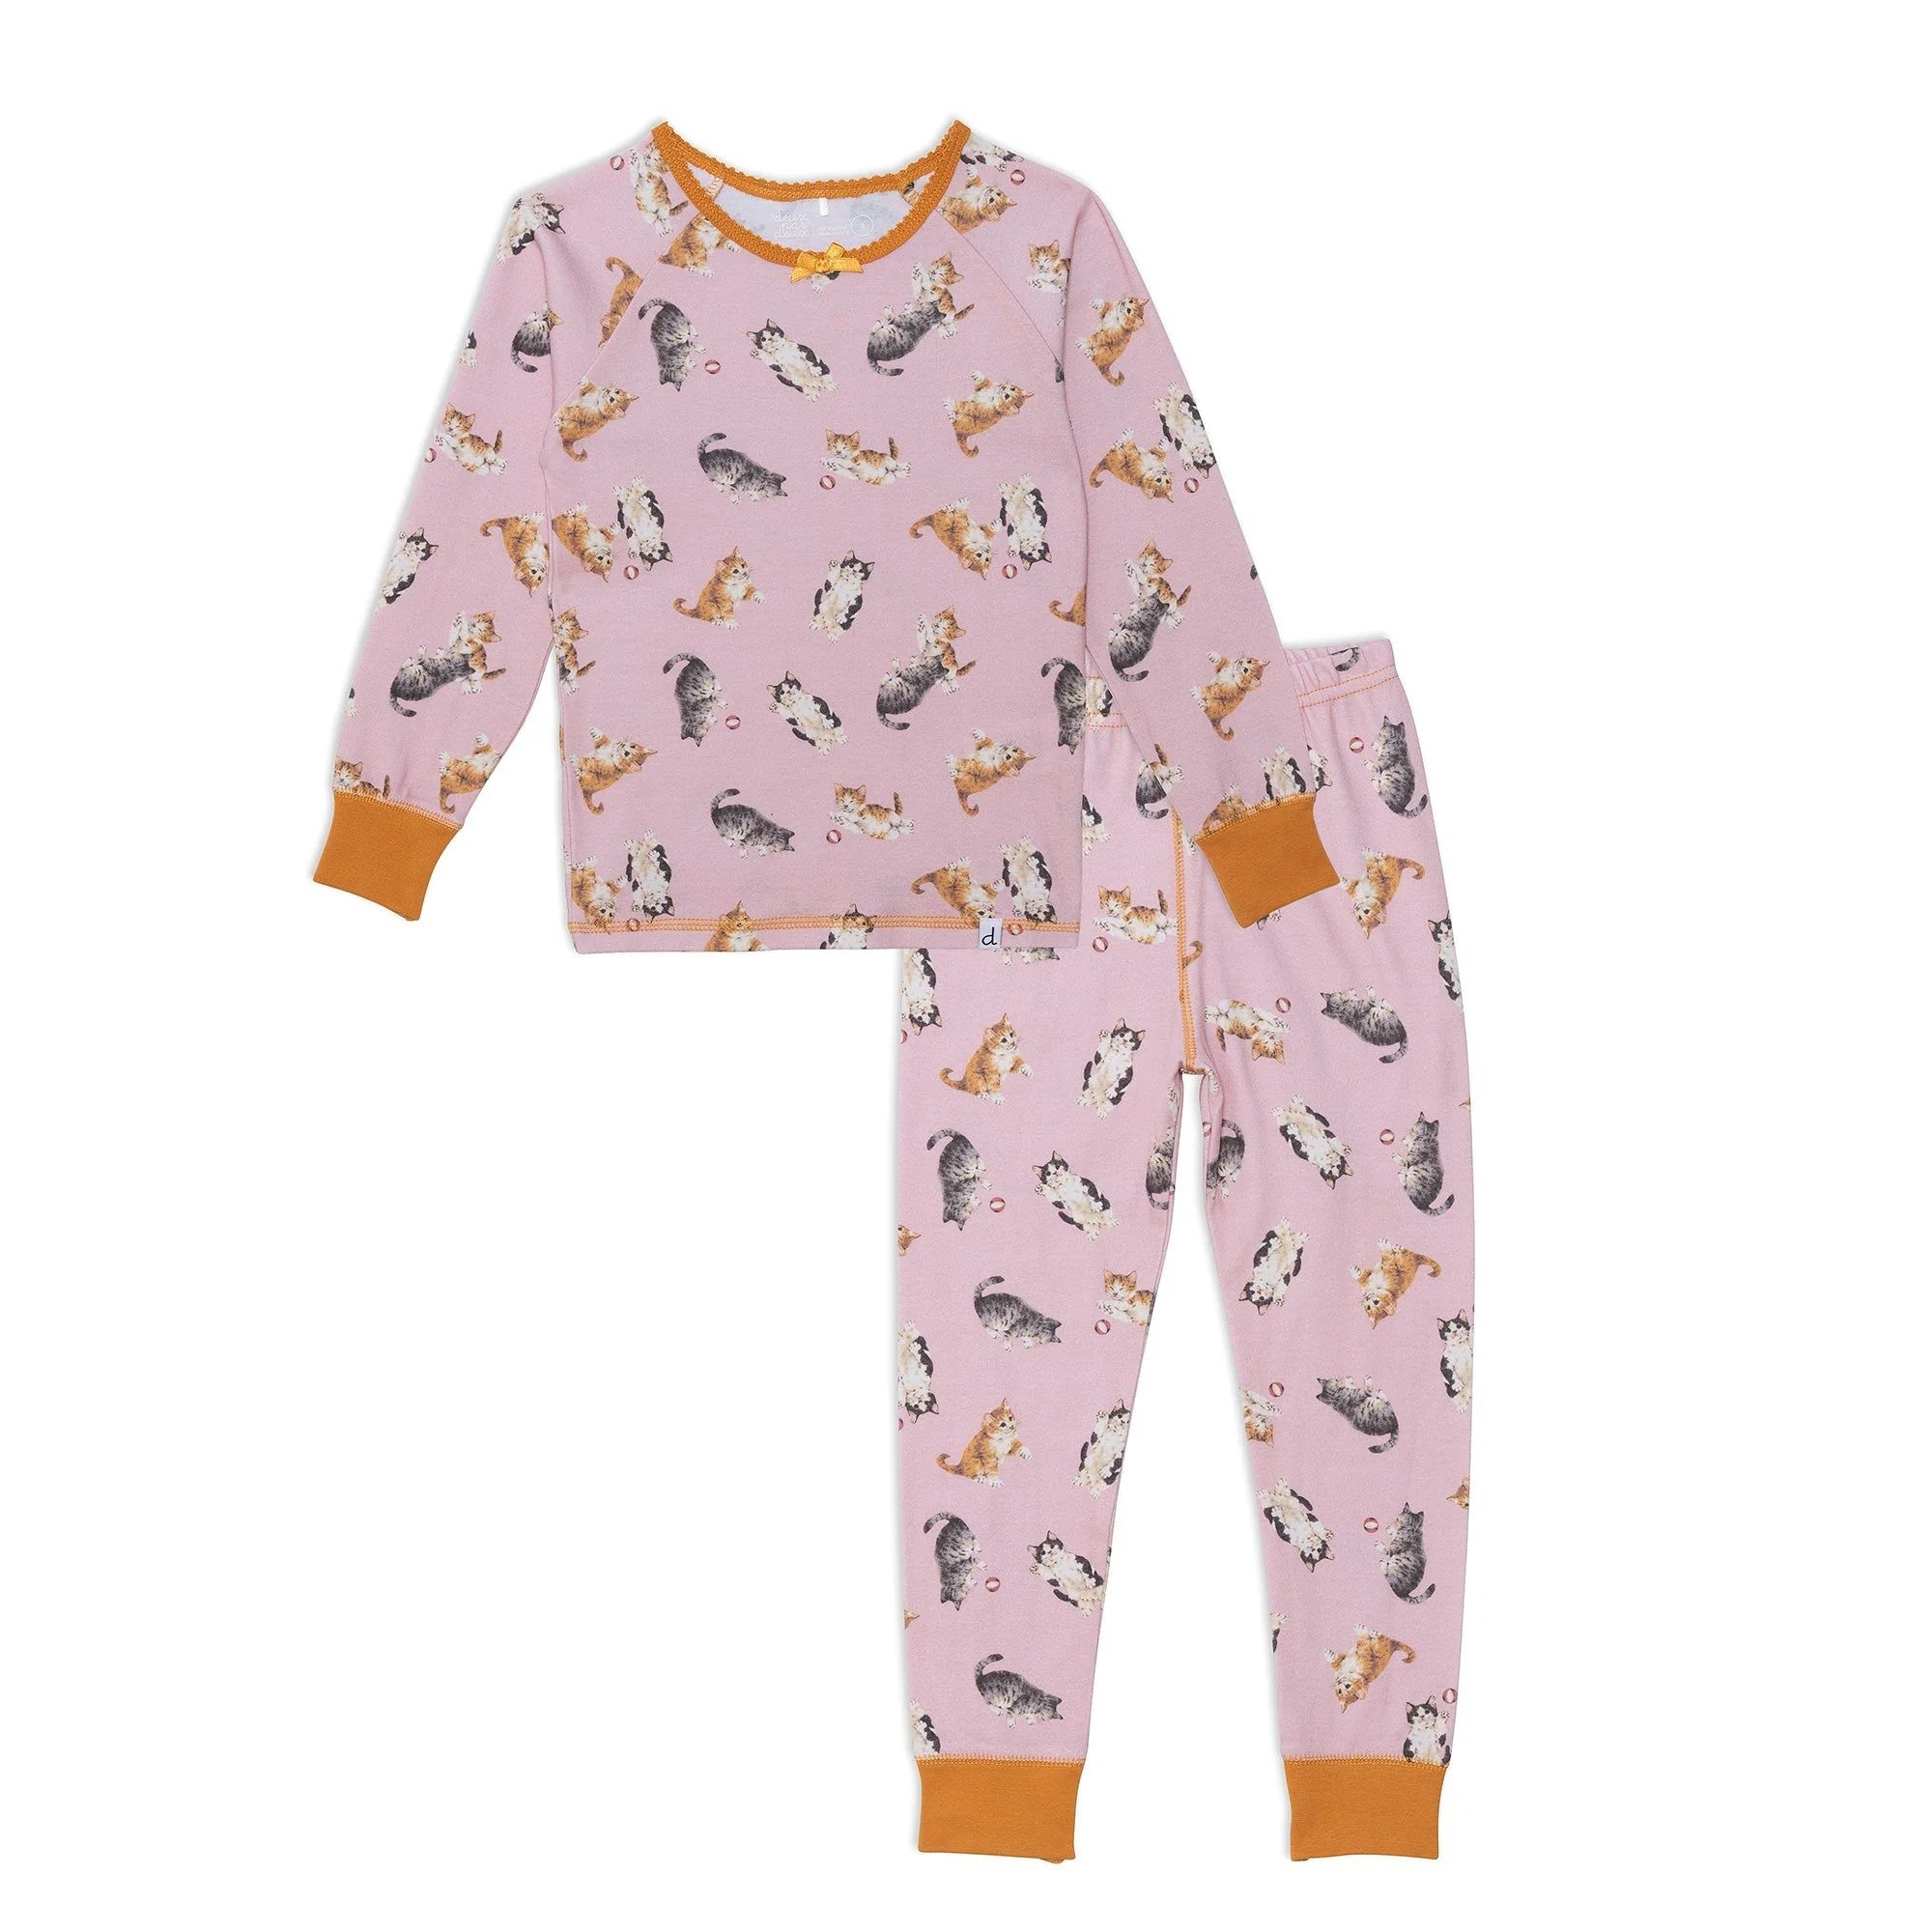 Organic Cotton Two Piece Printed Pajama Set With Cats | Deux par Deux Childrens Designer Clothing